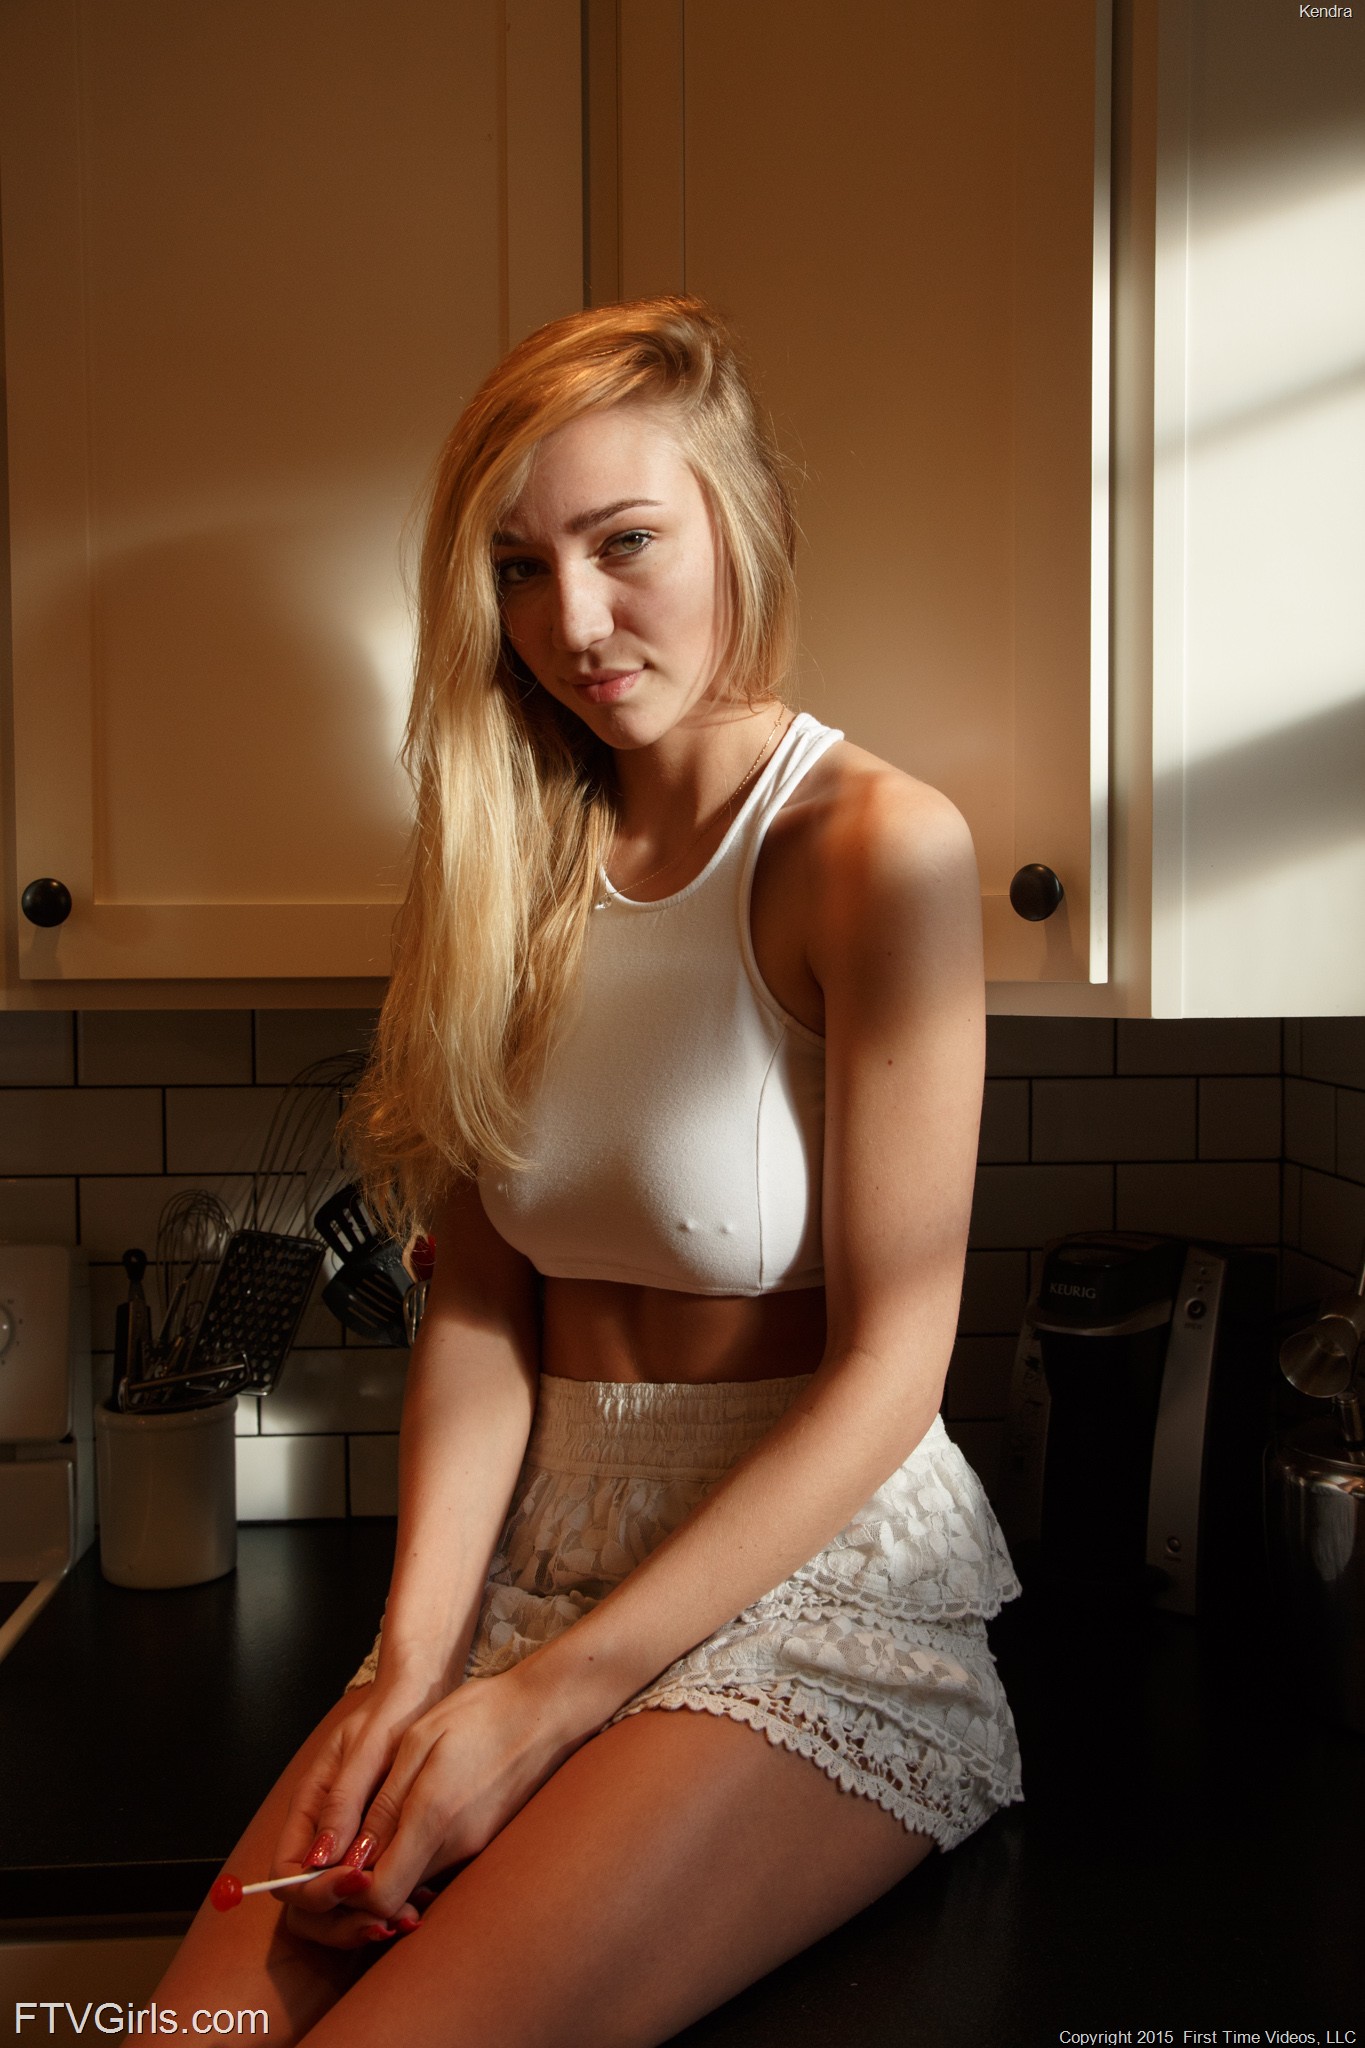 kendra-tits-nude-kitchen-pussy-dildo-blonde-ftvgirls-09